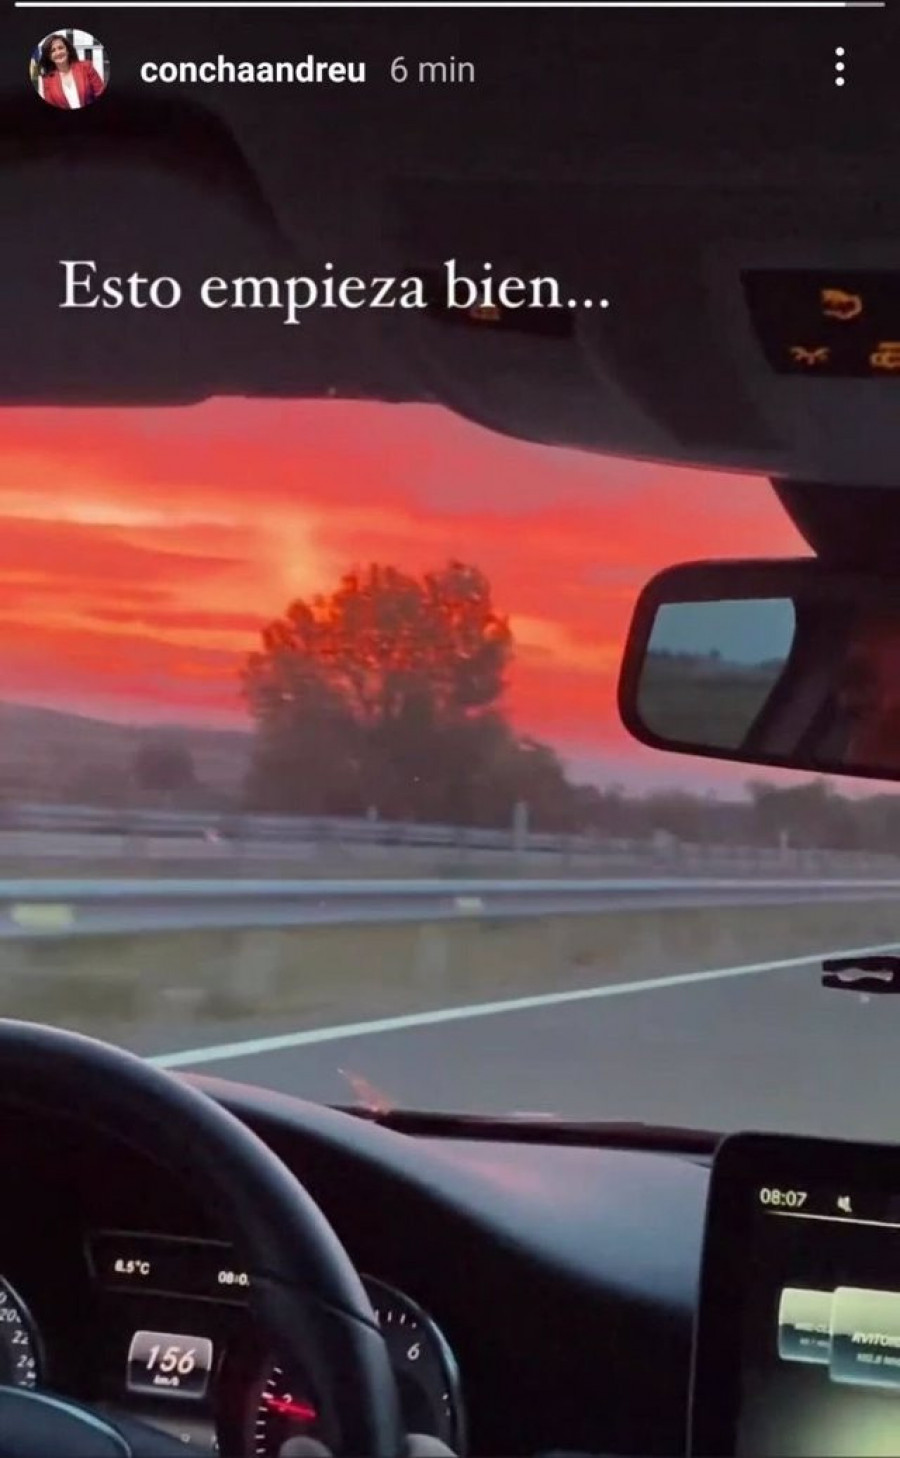 La Presidenta de La Rioja revela ella misma en una foto que viajaba en un coche a 156 kilómetro por hora